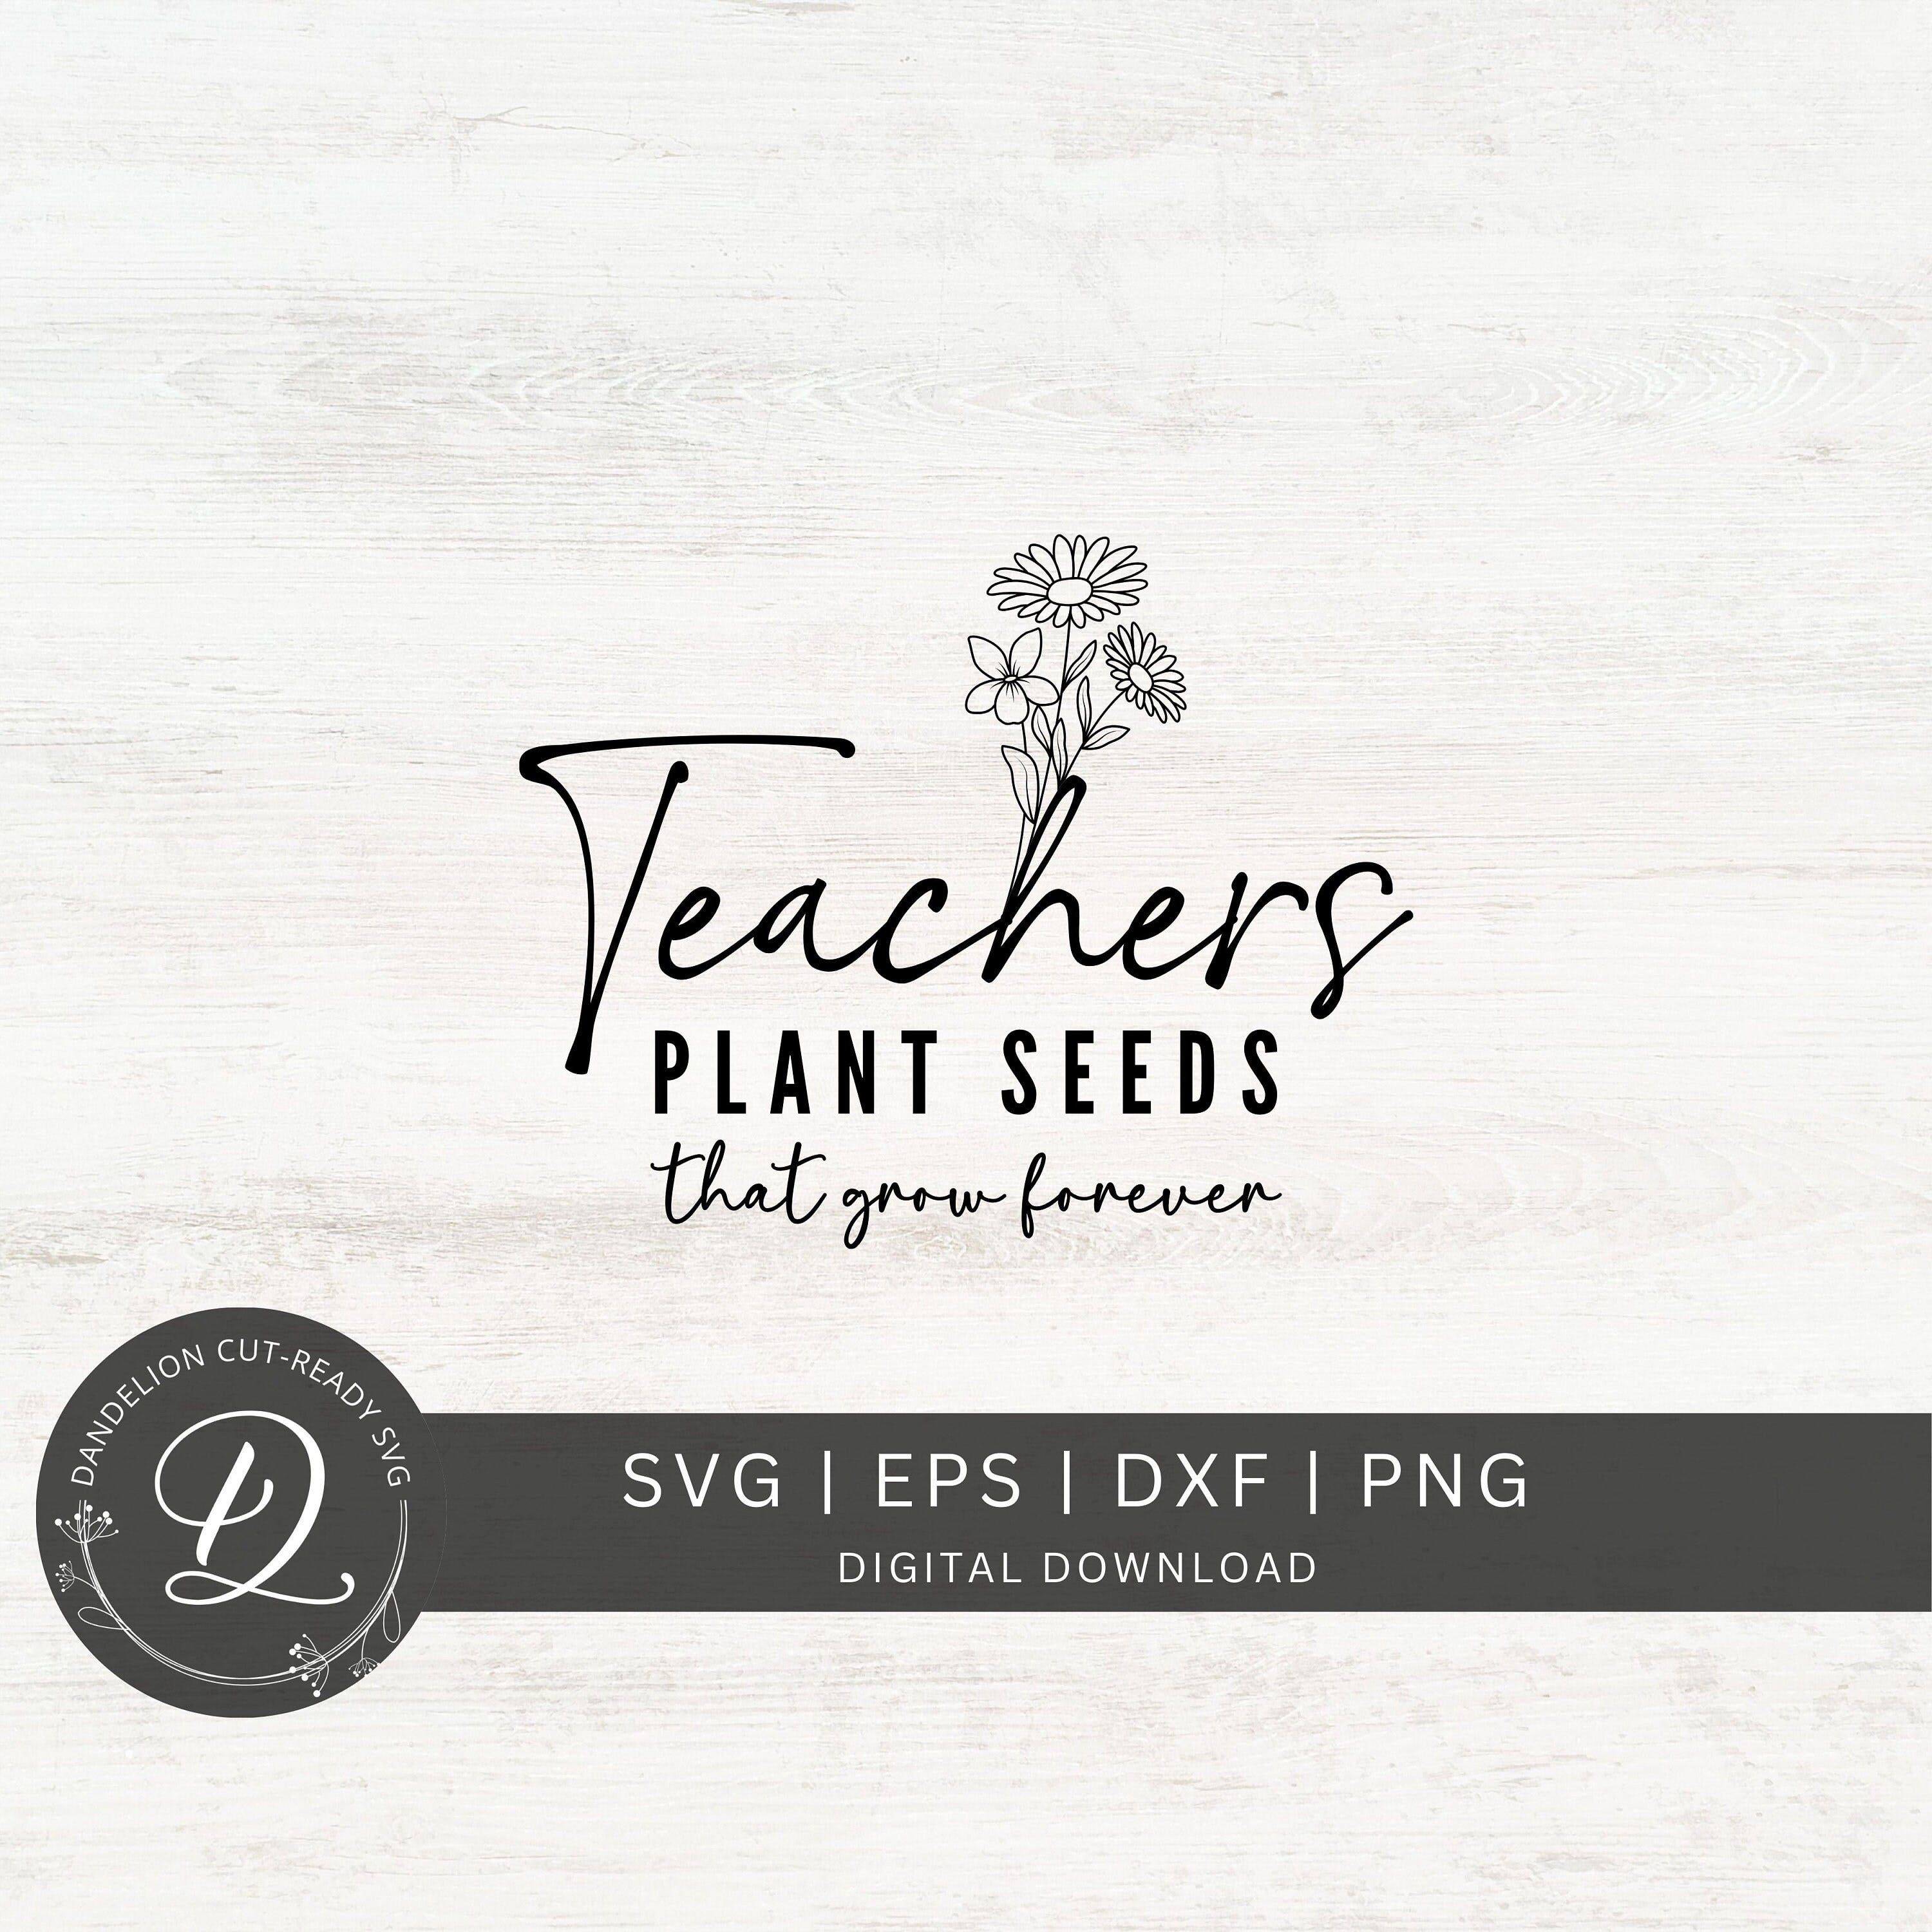 Teachers Plant Seeds That Grow Forever SVG, Teacher Svg, Teacher Life Svg, Wildflowers Cut File For Cricut, Teacher Appreciation Svg.